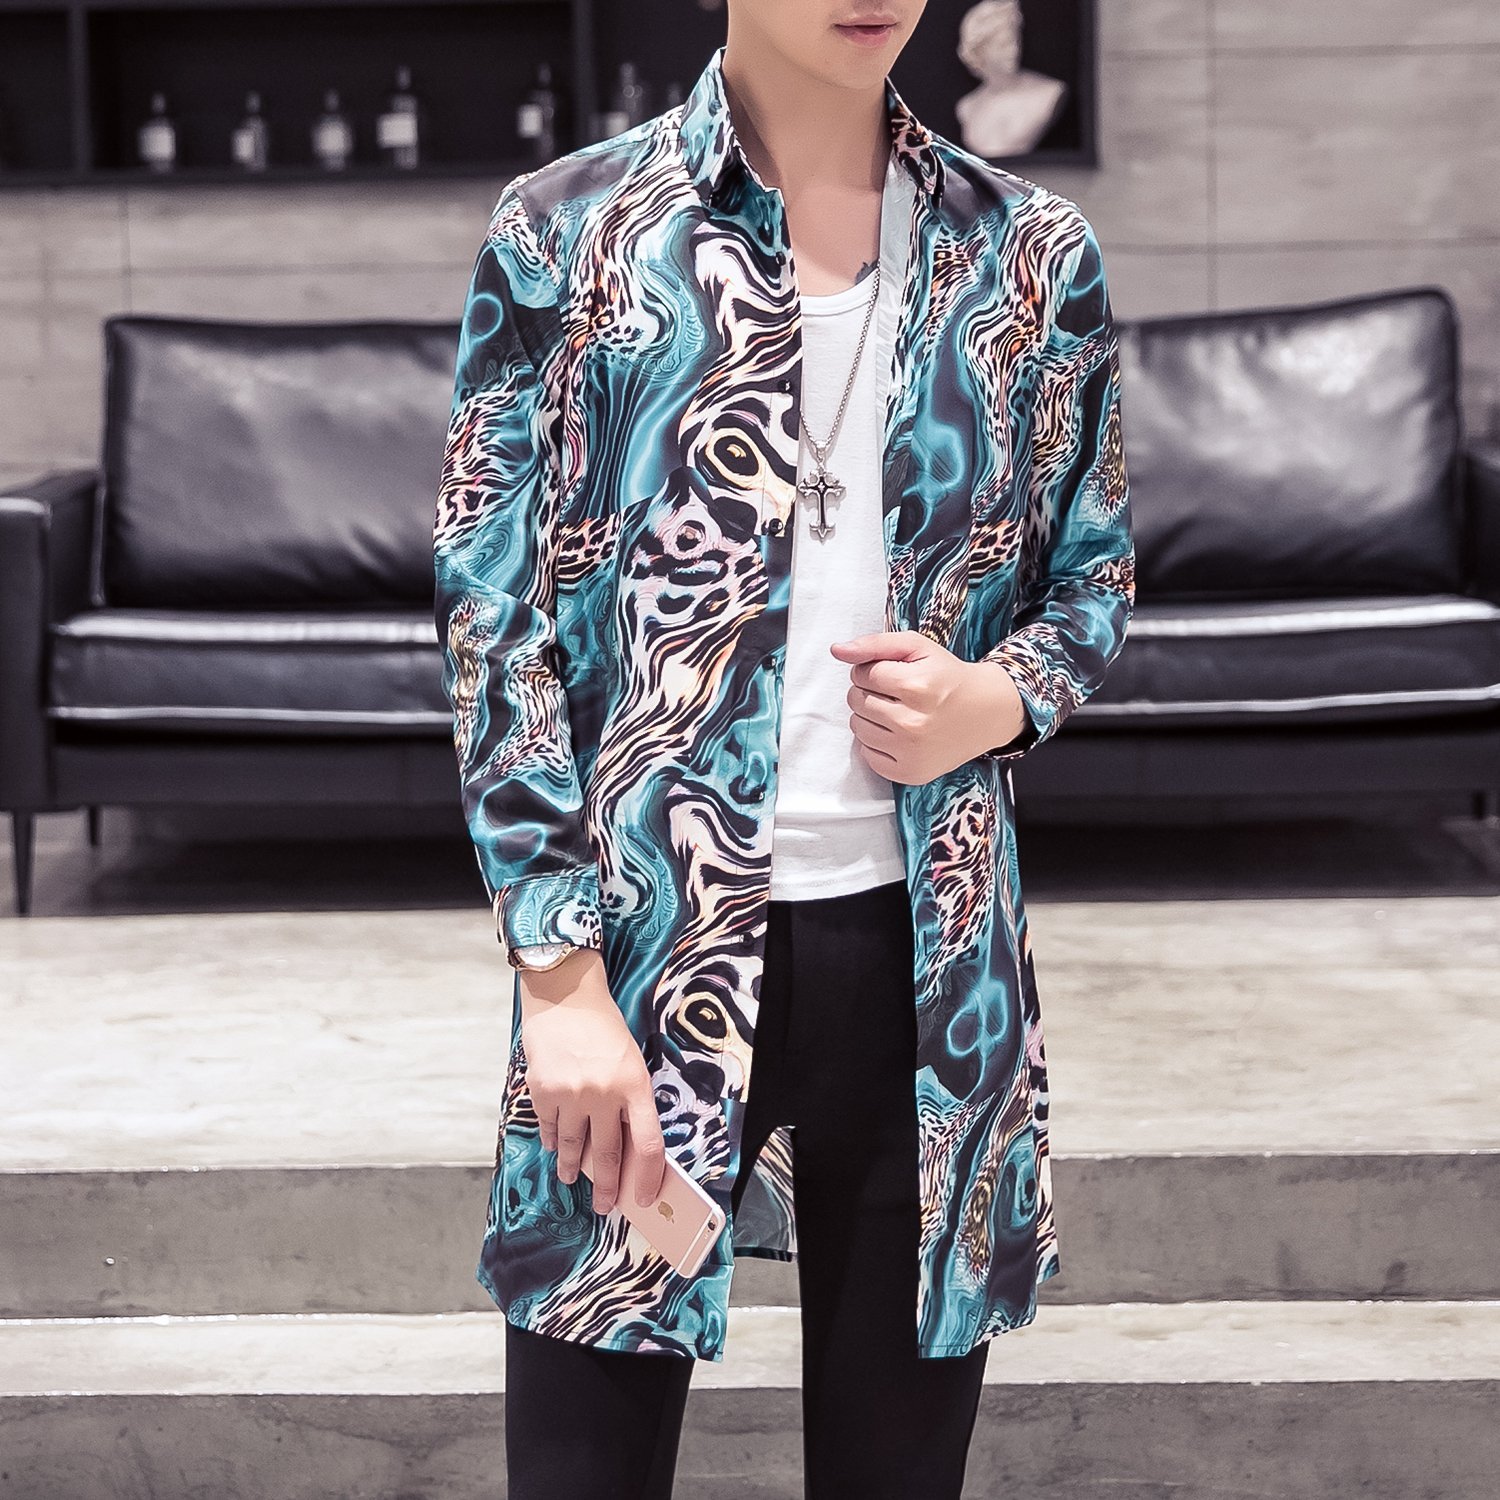 FINDSENSE品牌 秋季 新款 日本 男 高端 豹紋印花 個性襯衣 時尚 休閒 中長款 長袖襯衫 潮流上衣外套